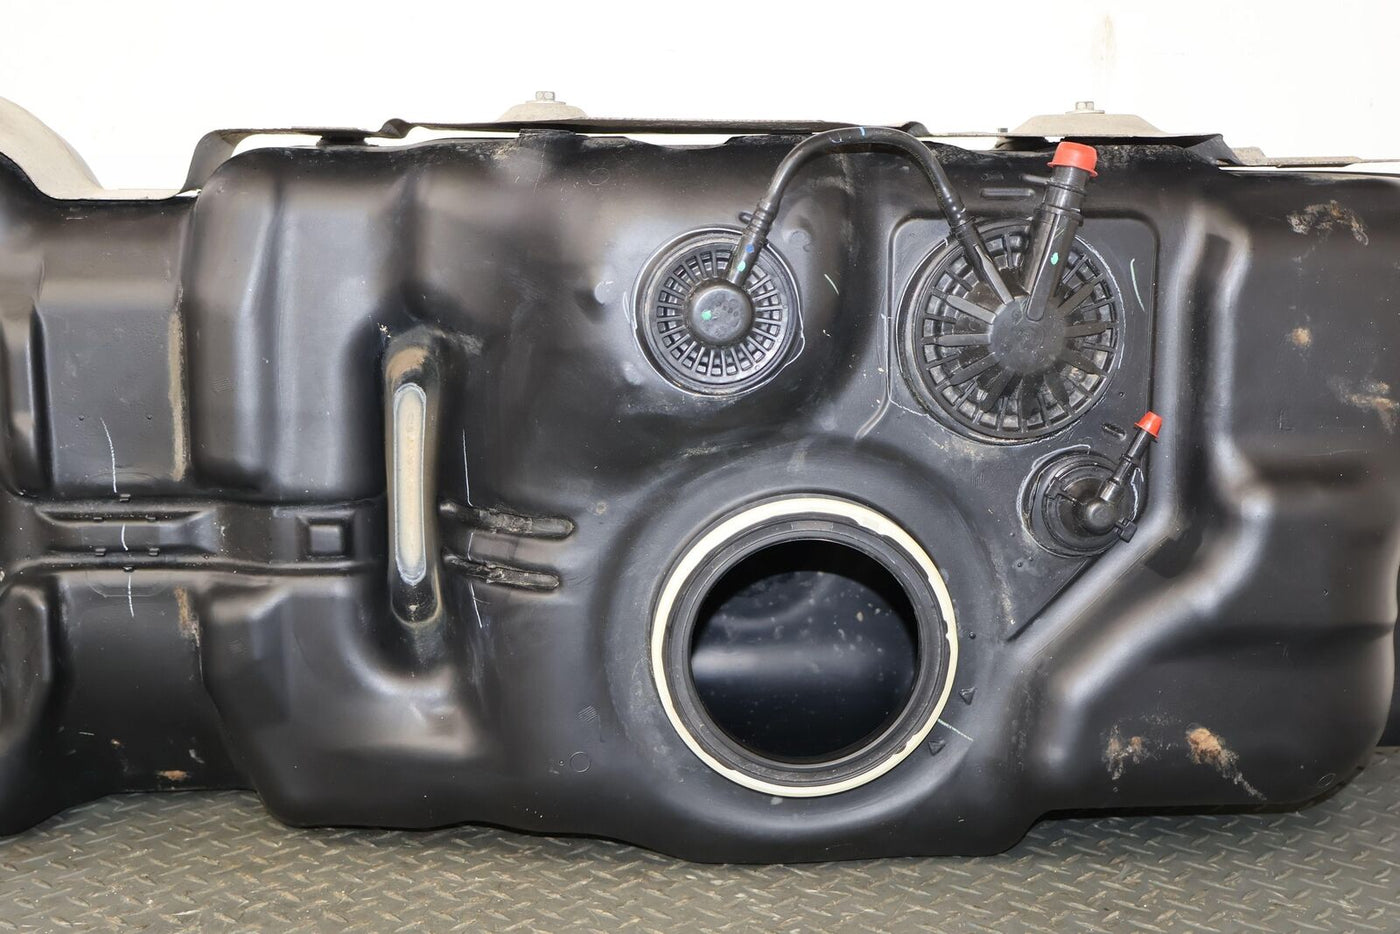 03-09 Lexus GX470 Gas Gasoline Fuel Tank (No Fuel Pump) 165K Miles